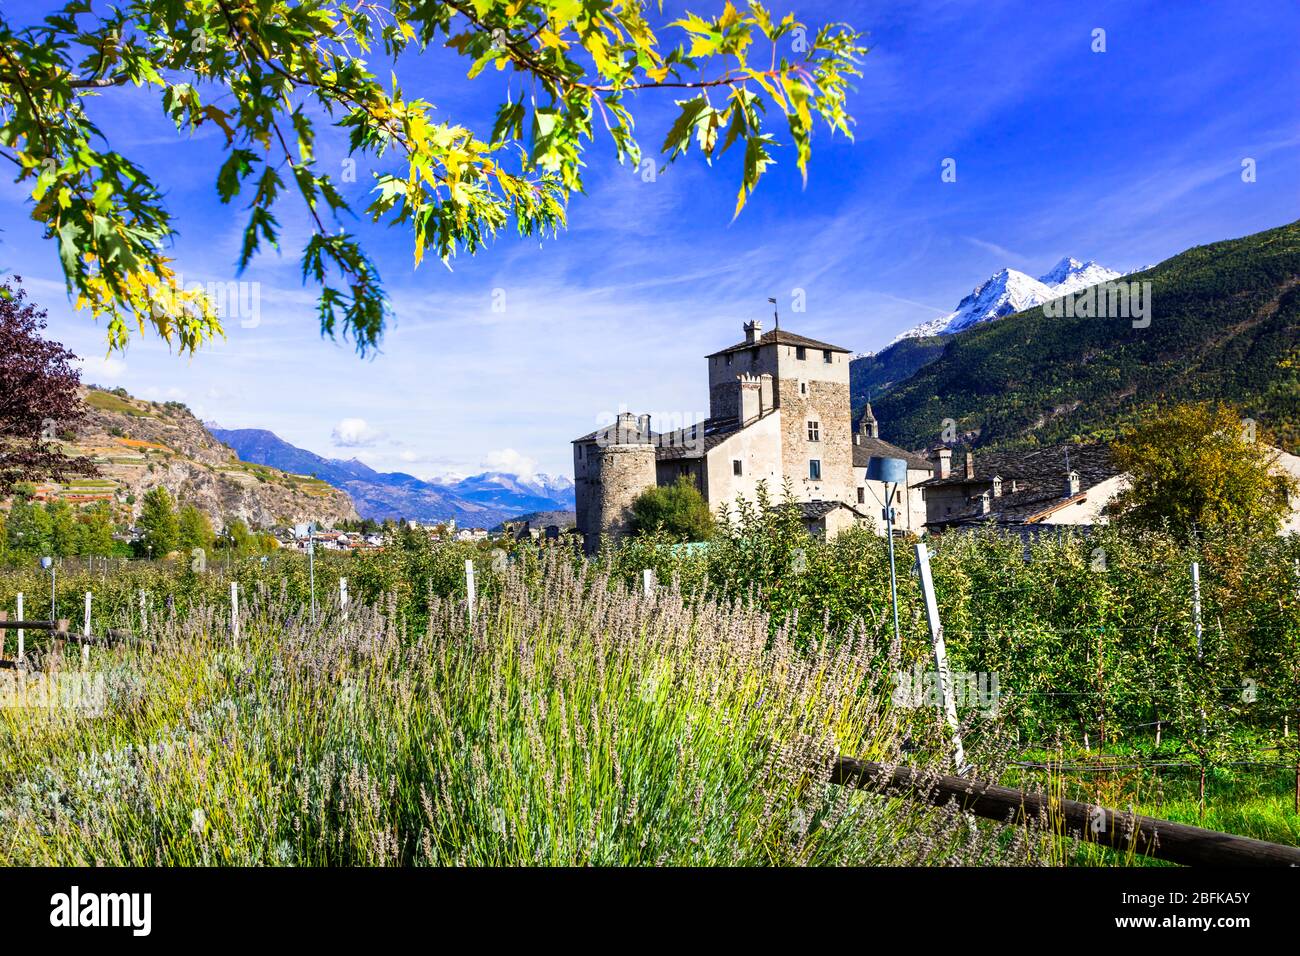 Des vignobles impressionnants et un vieux château, Sarriod de la tour, Valle d' Aosta, Italie. Banque D'Images